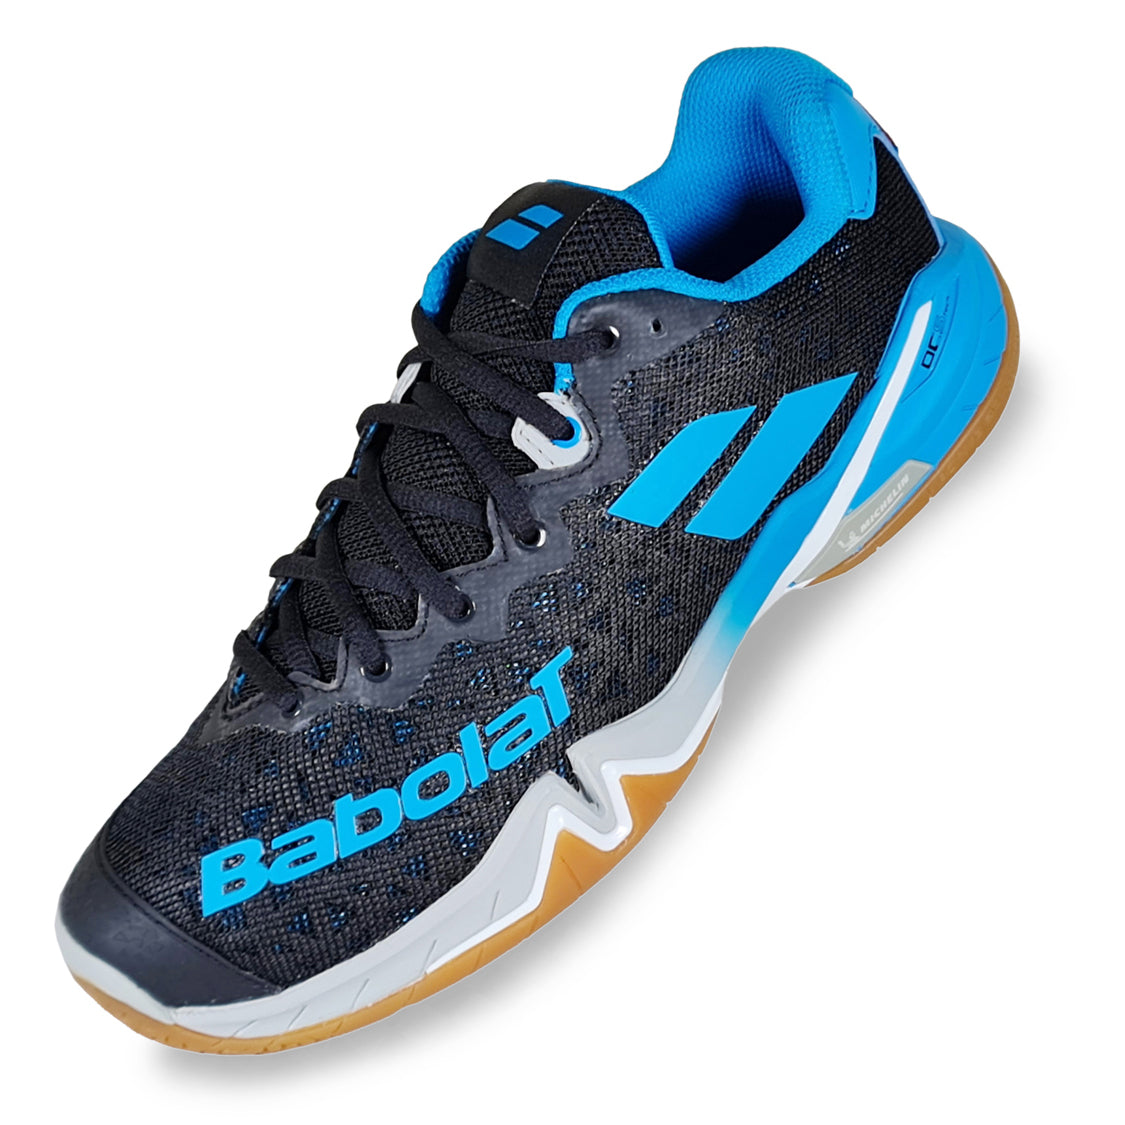 Babolat Shadow Tour Men Badminton Shoes - Best Price online Prokicksports.com